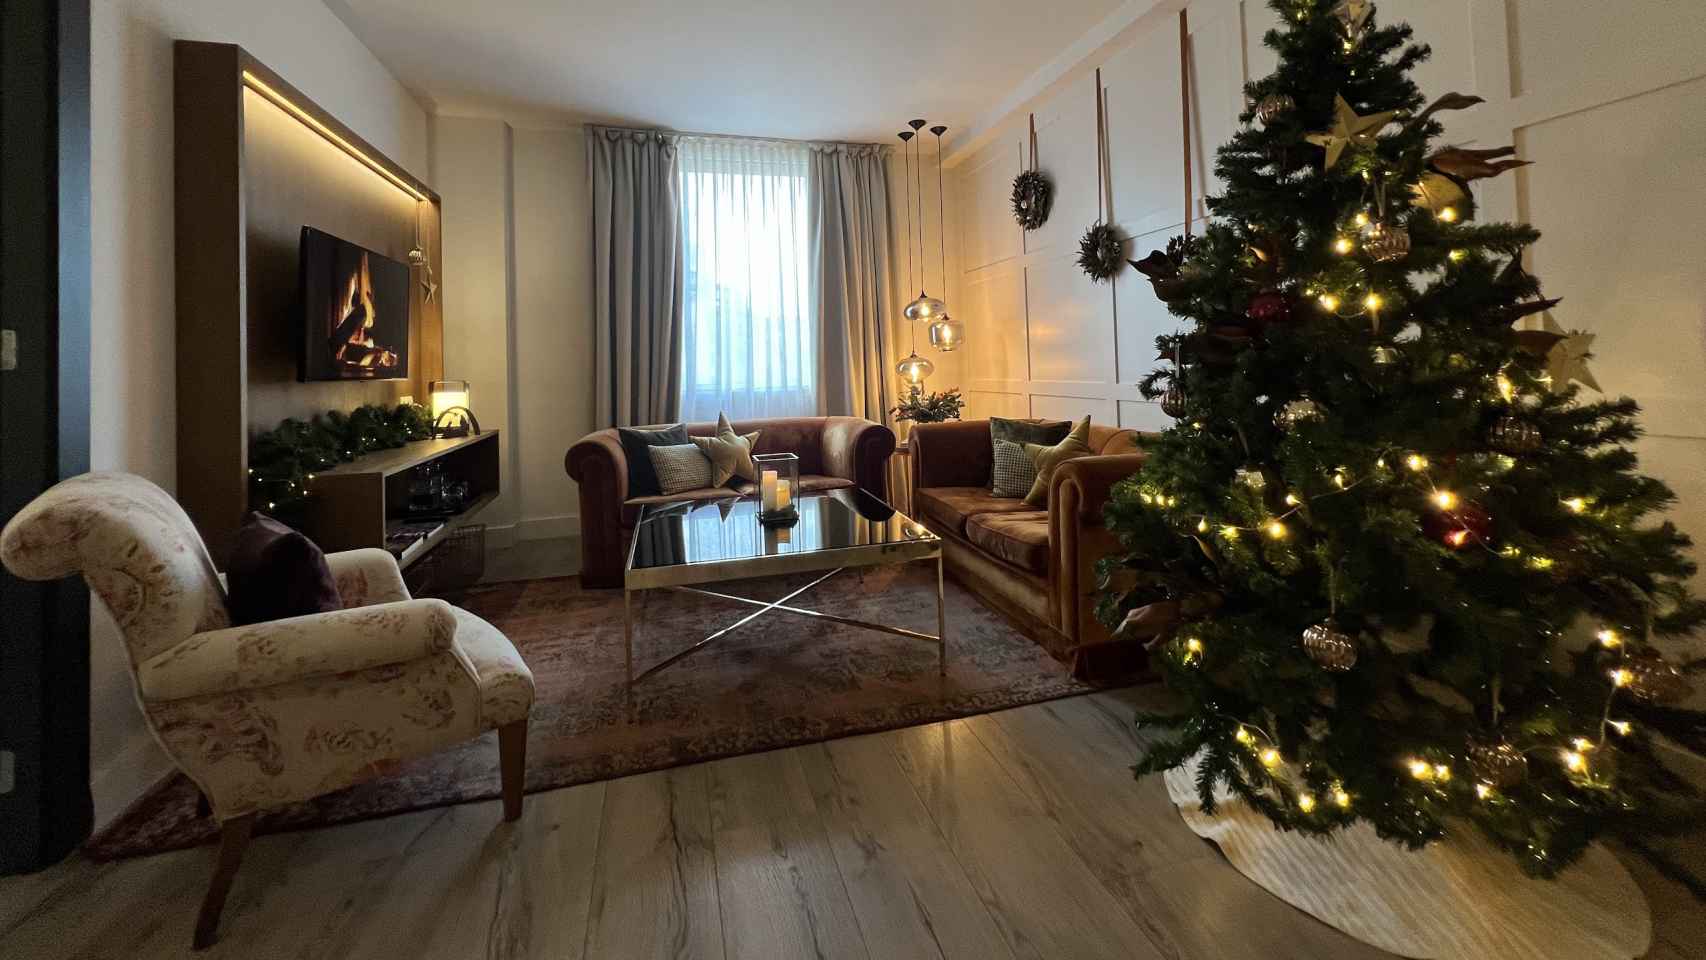 La suite del Hotel Gallery con decoración navideña